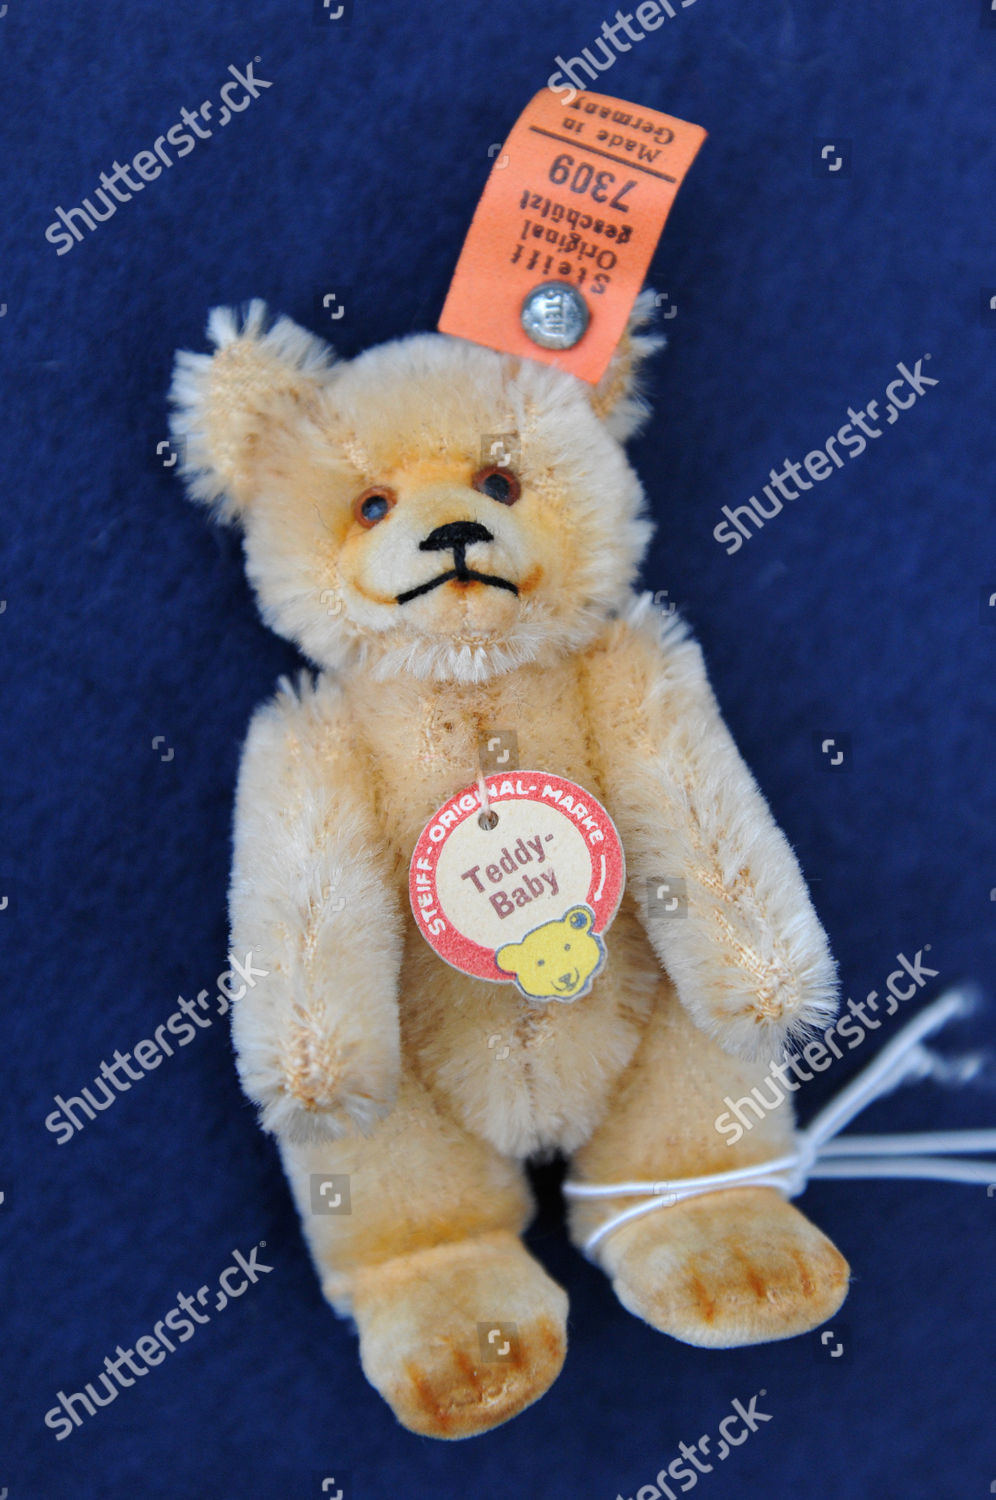 miniature teddy bears for sale